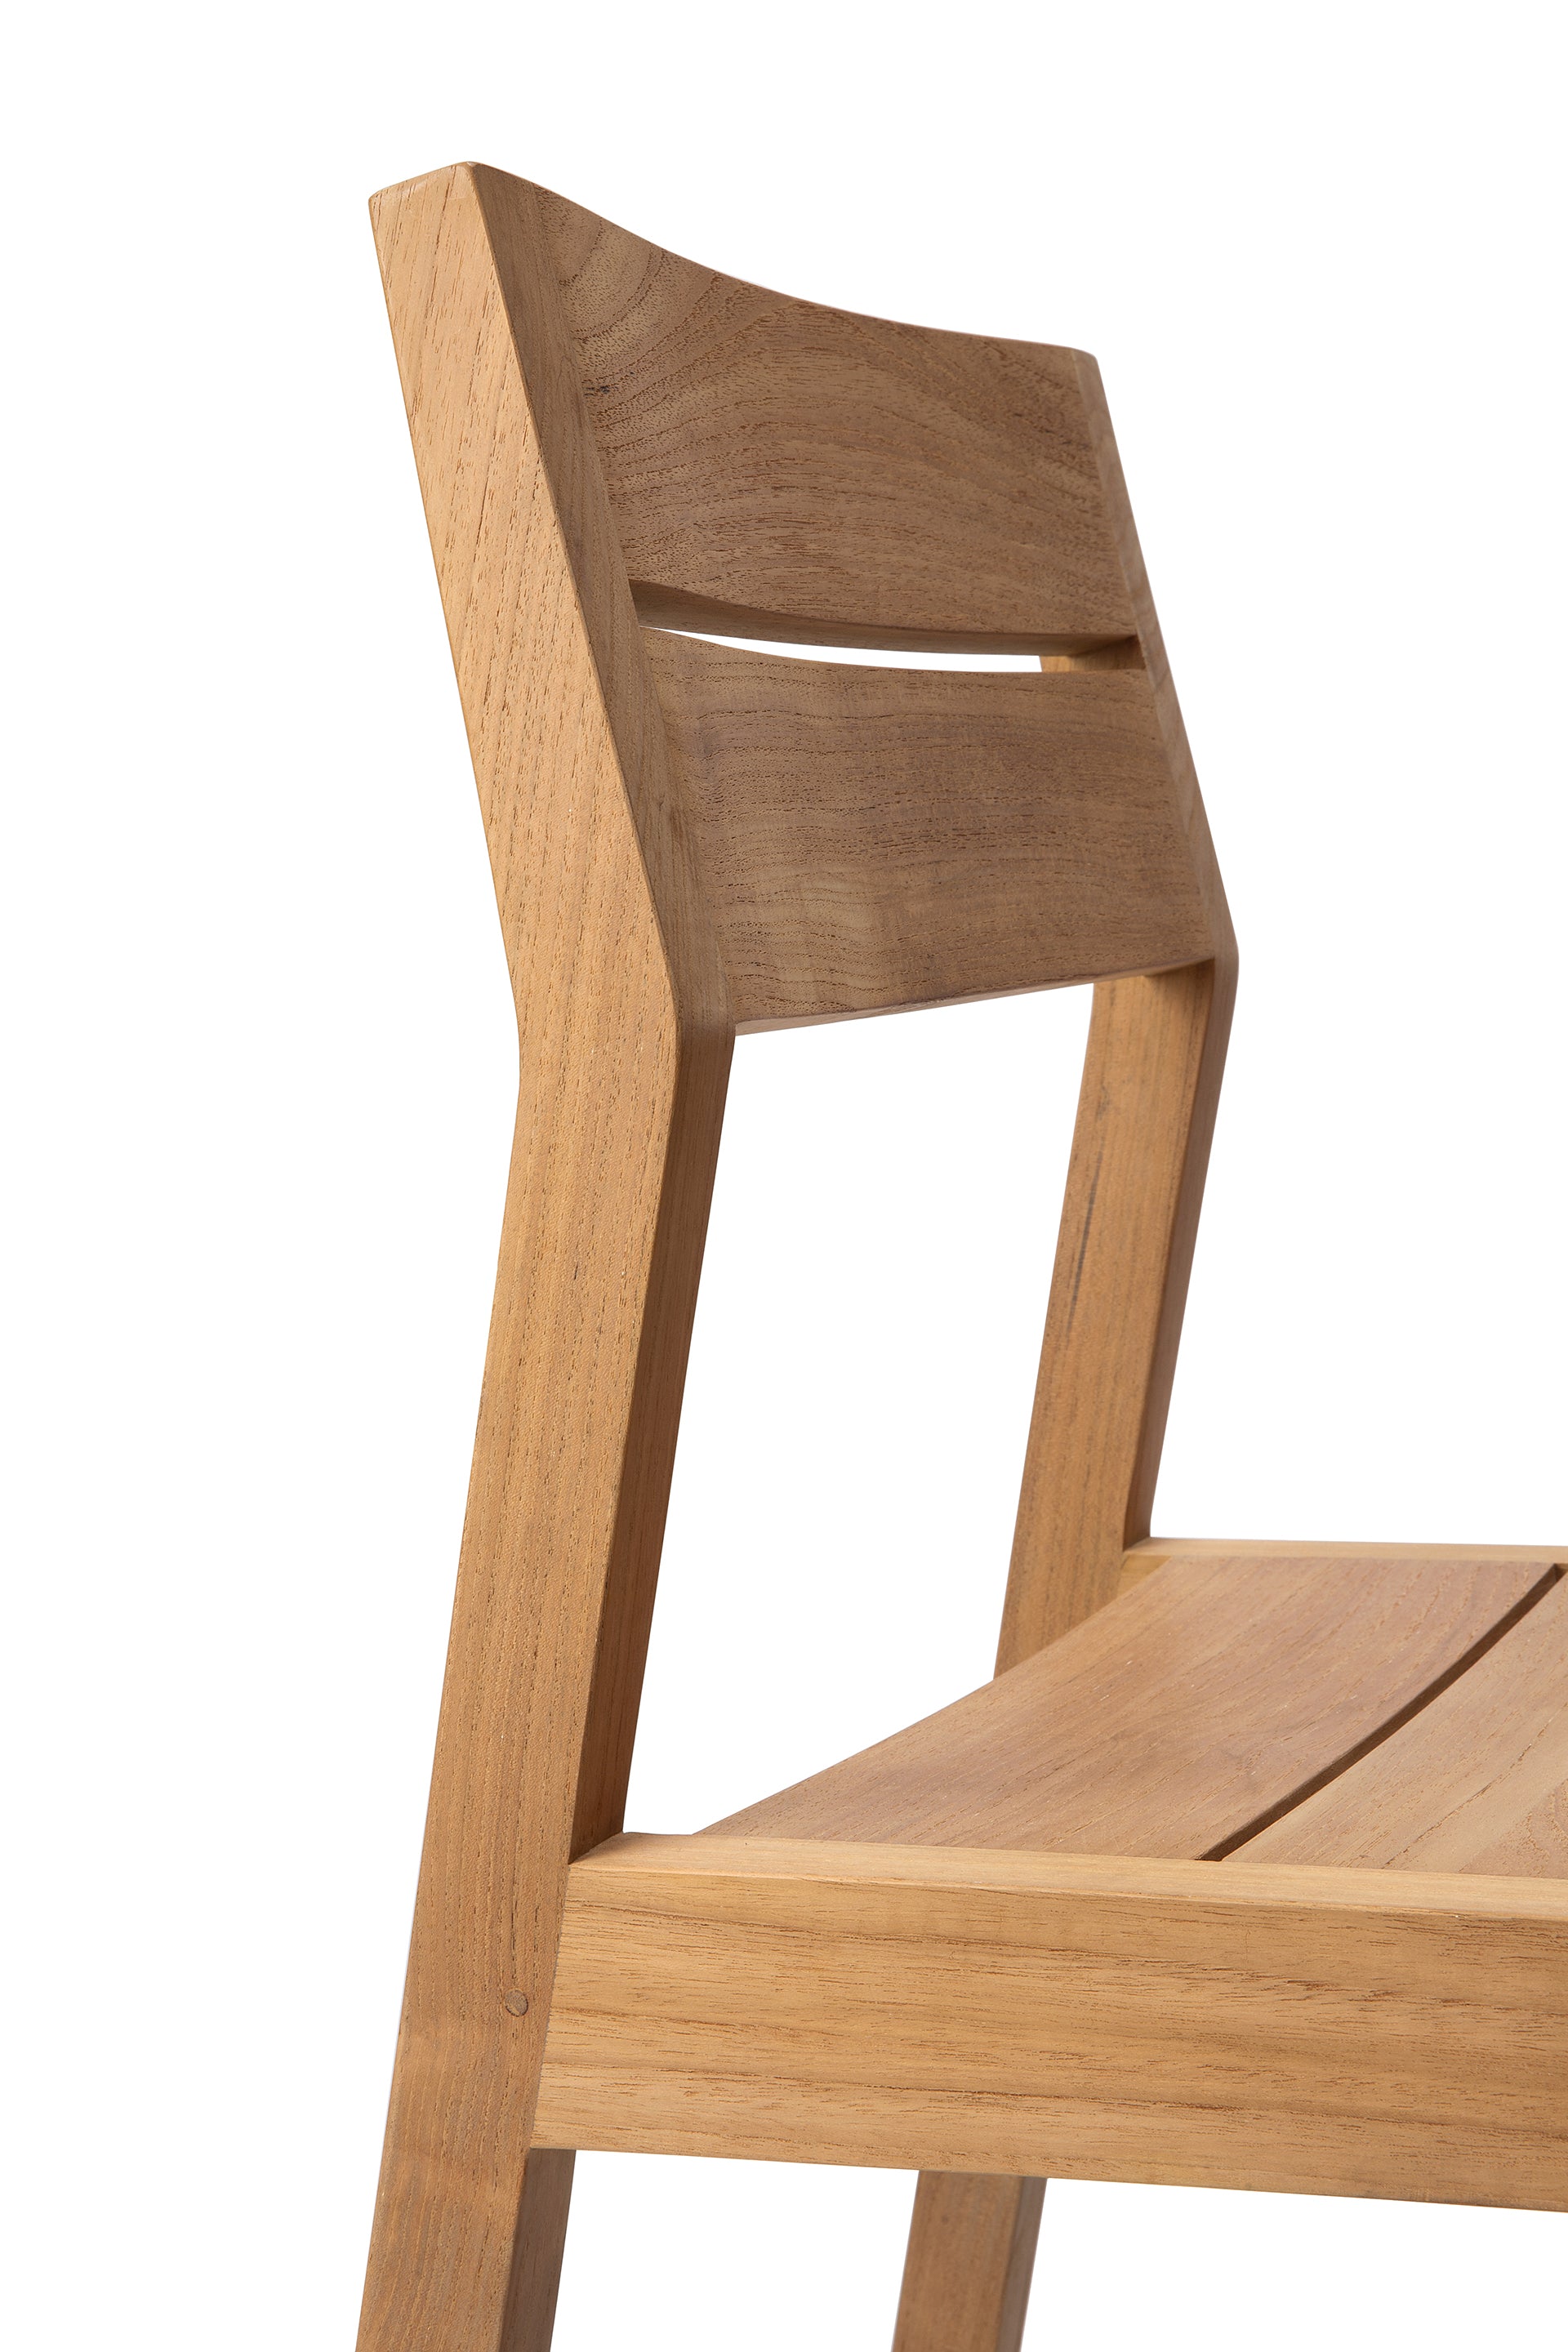 比利時原裝進口實木傢俬 - 戶外系列 - Ex 1系列柚木餐椅